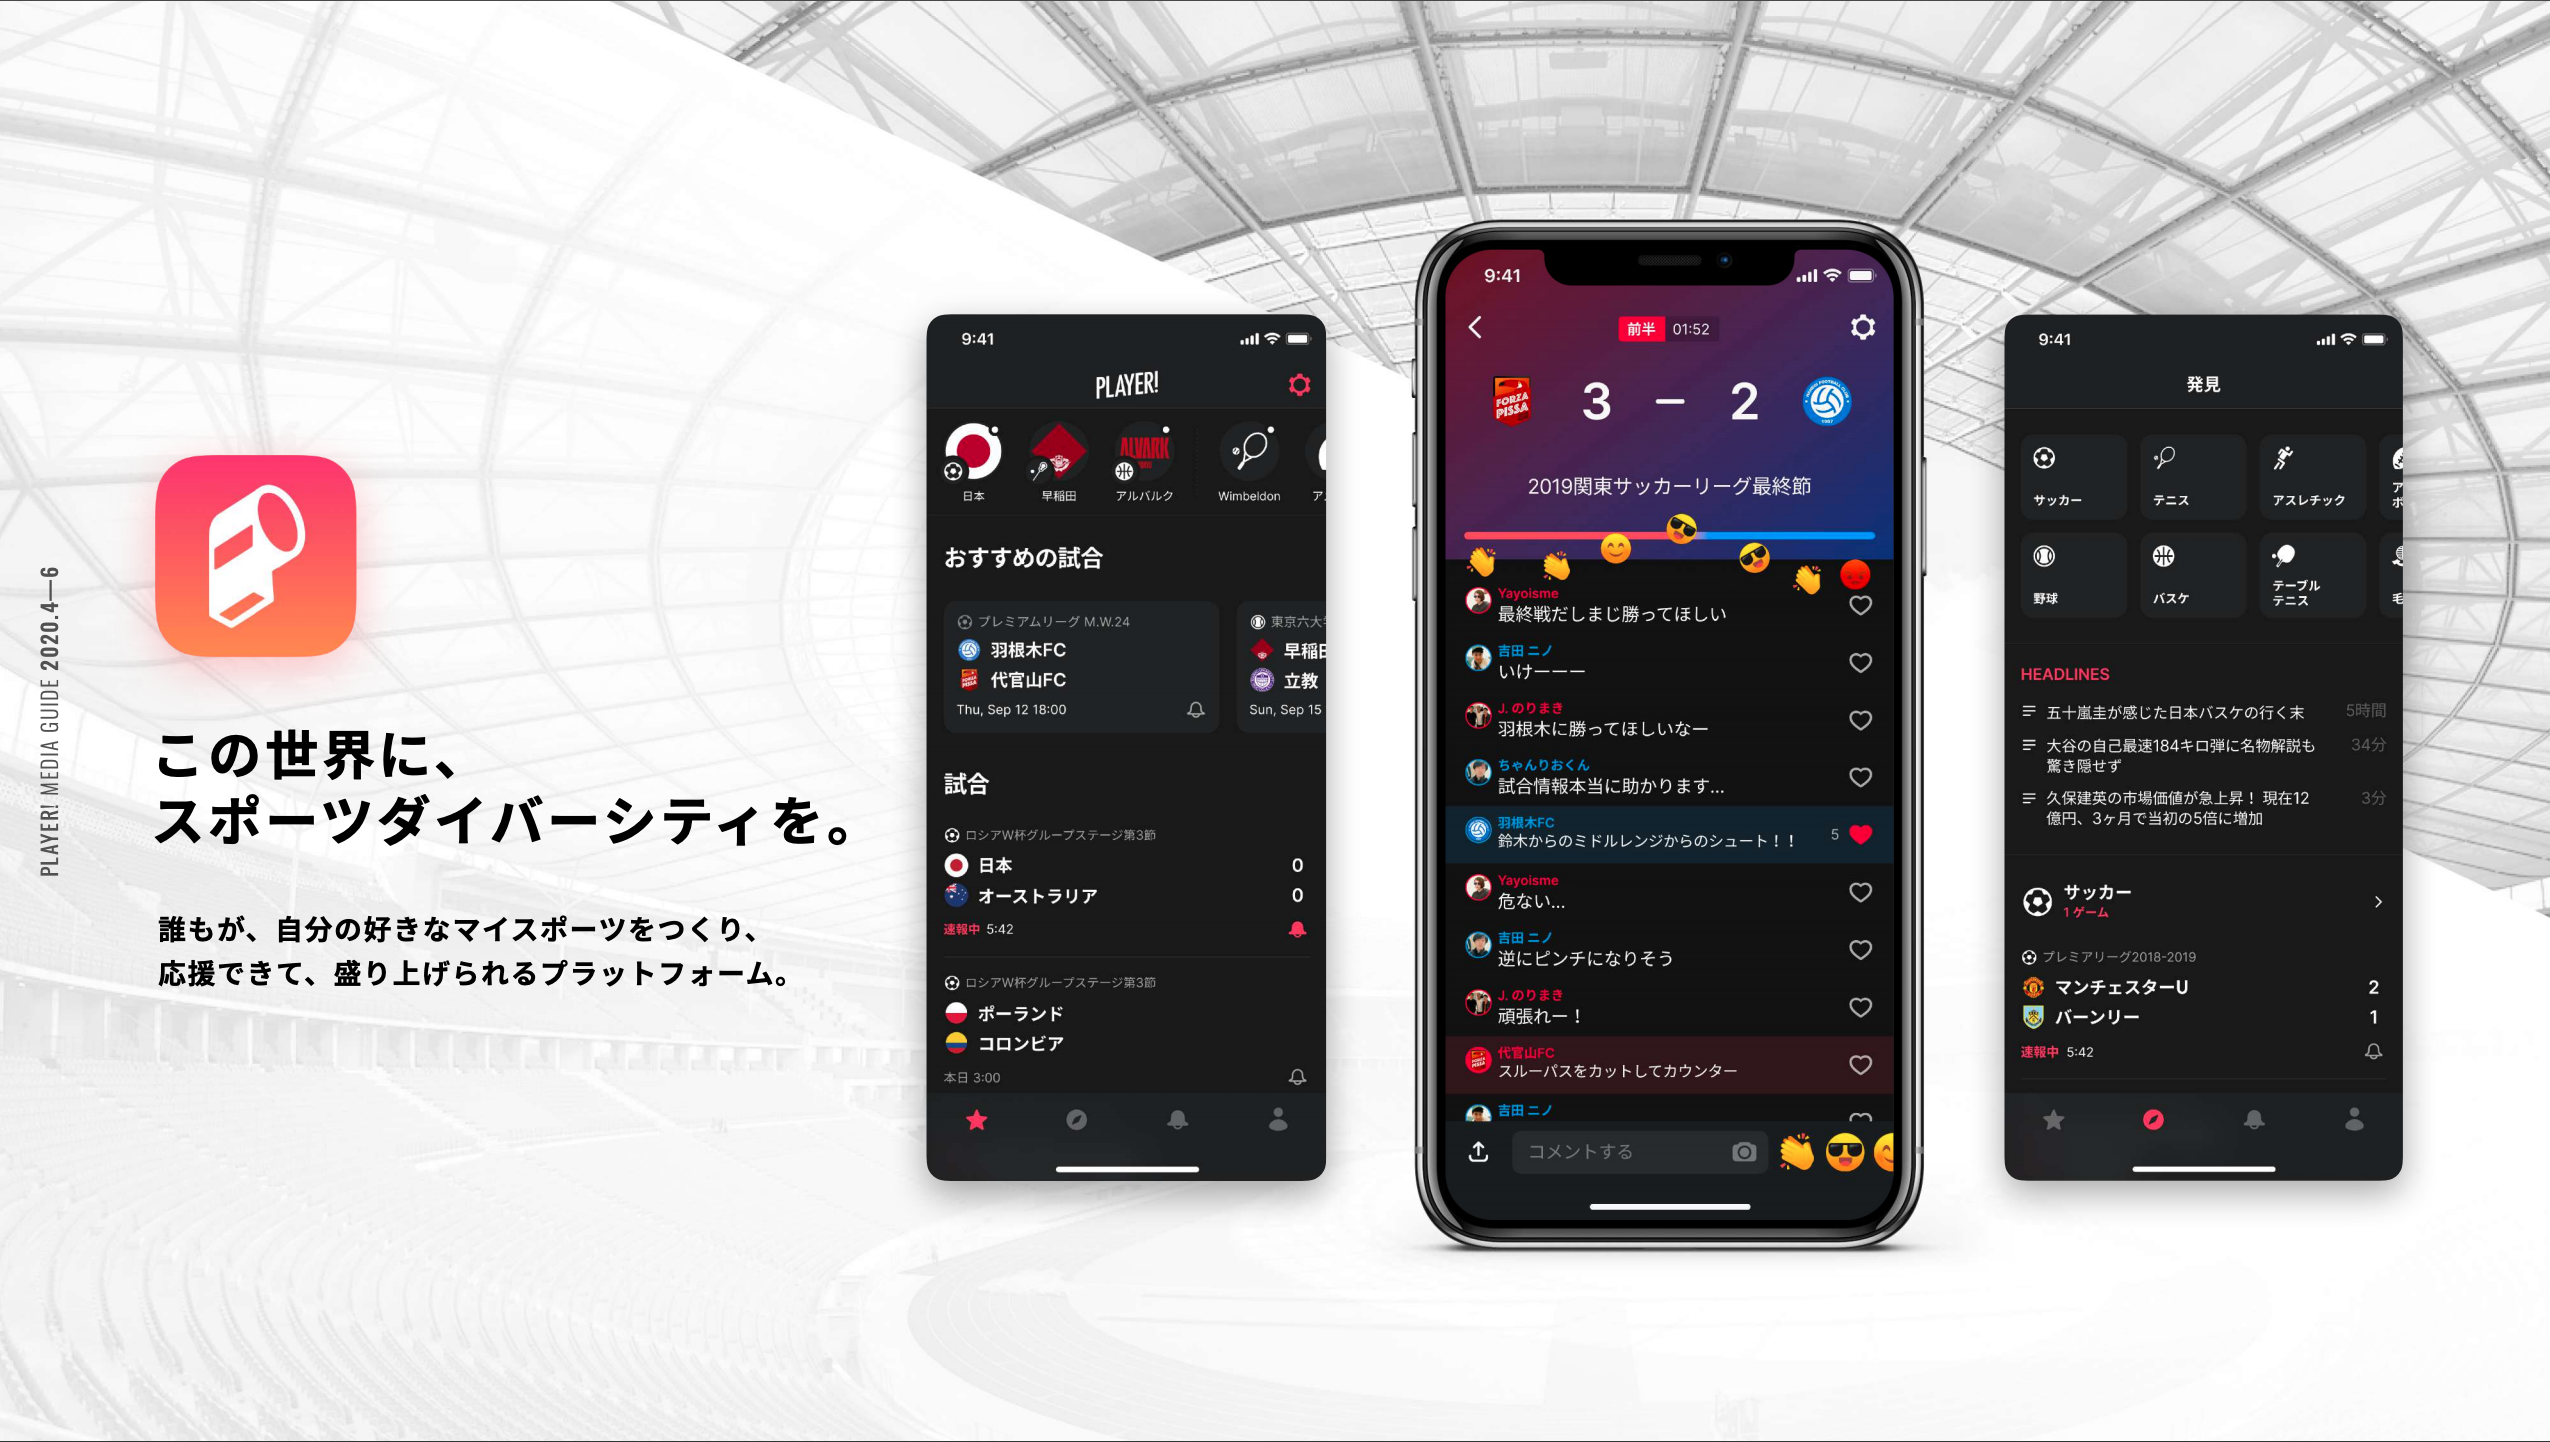 Player Ntt Sportict 学生スポーツ100試合をaiカメラを用いて配信決定 Ookamiのプレスリリース